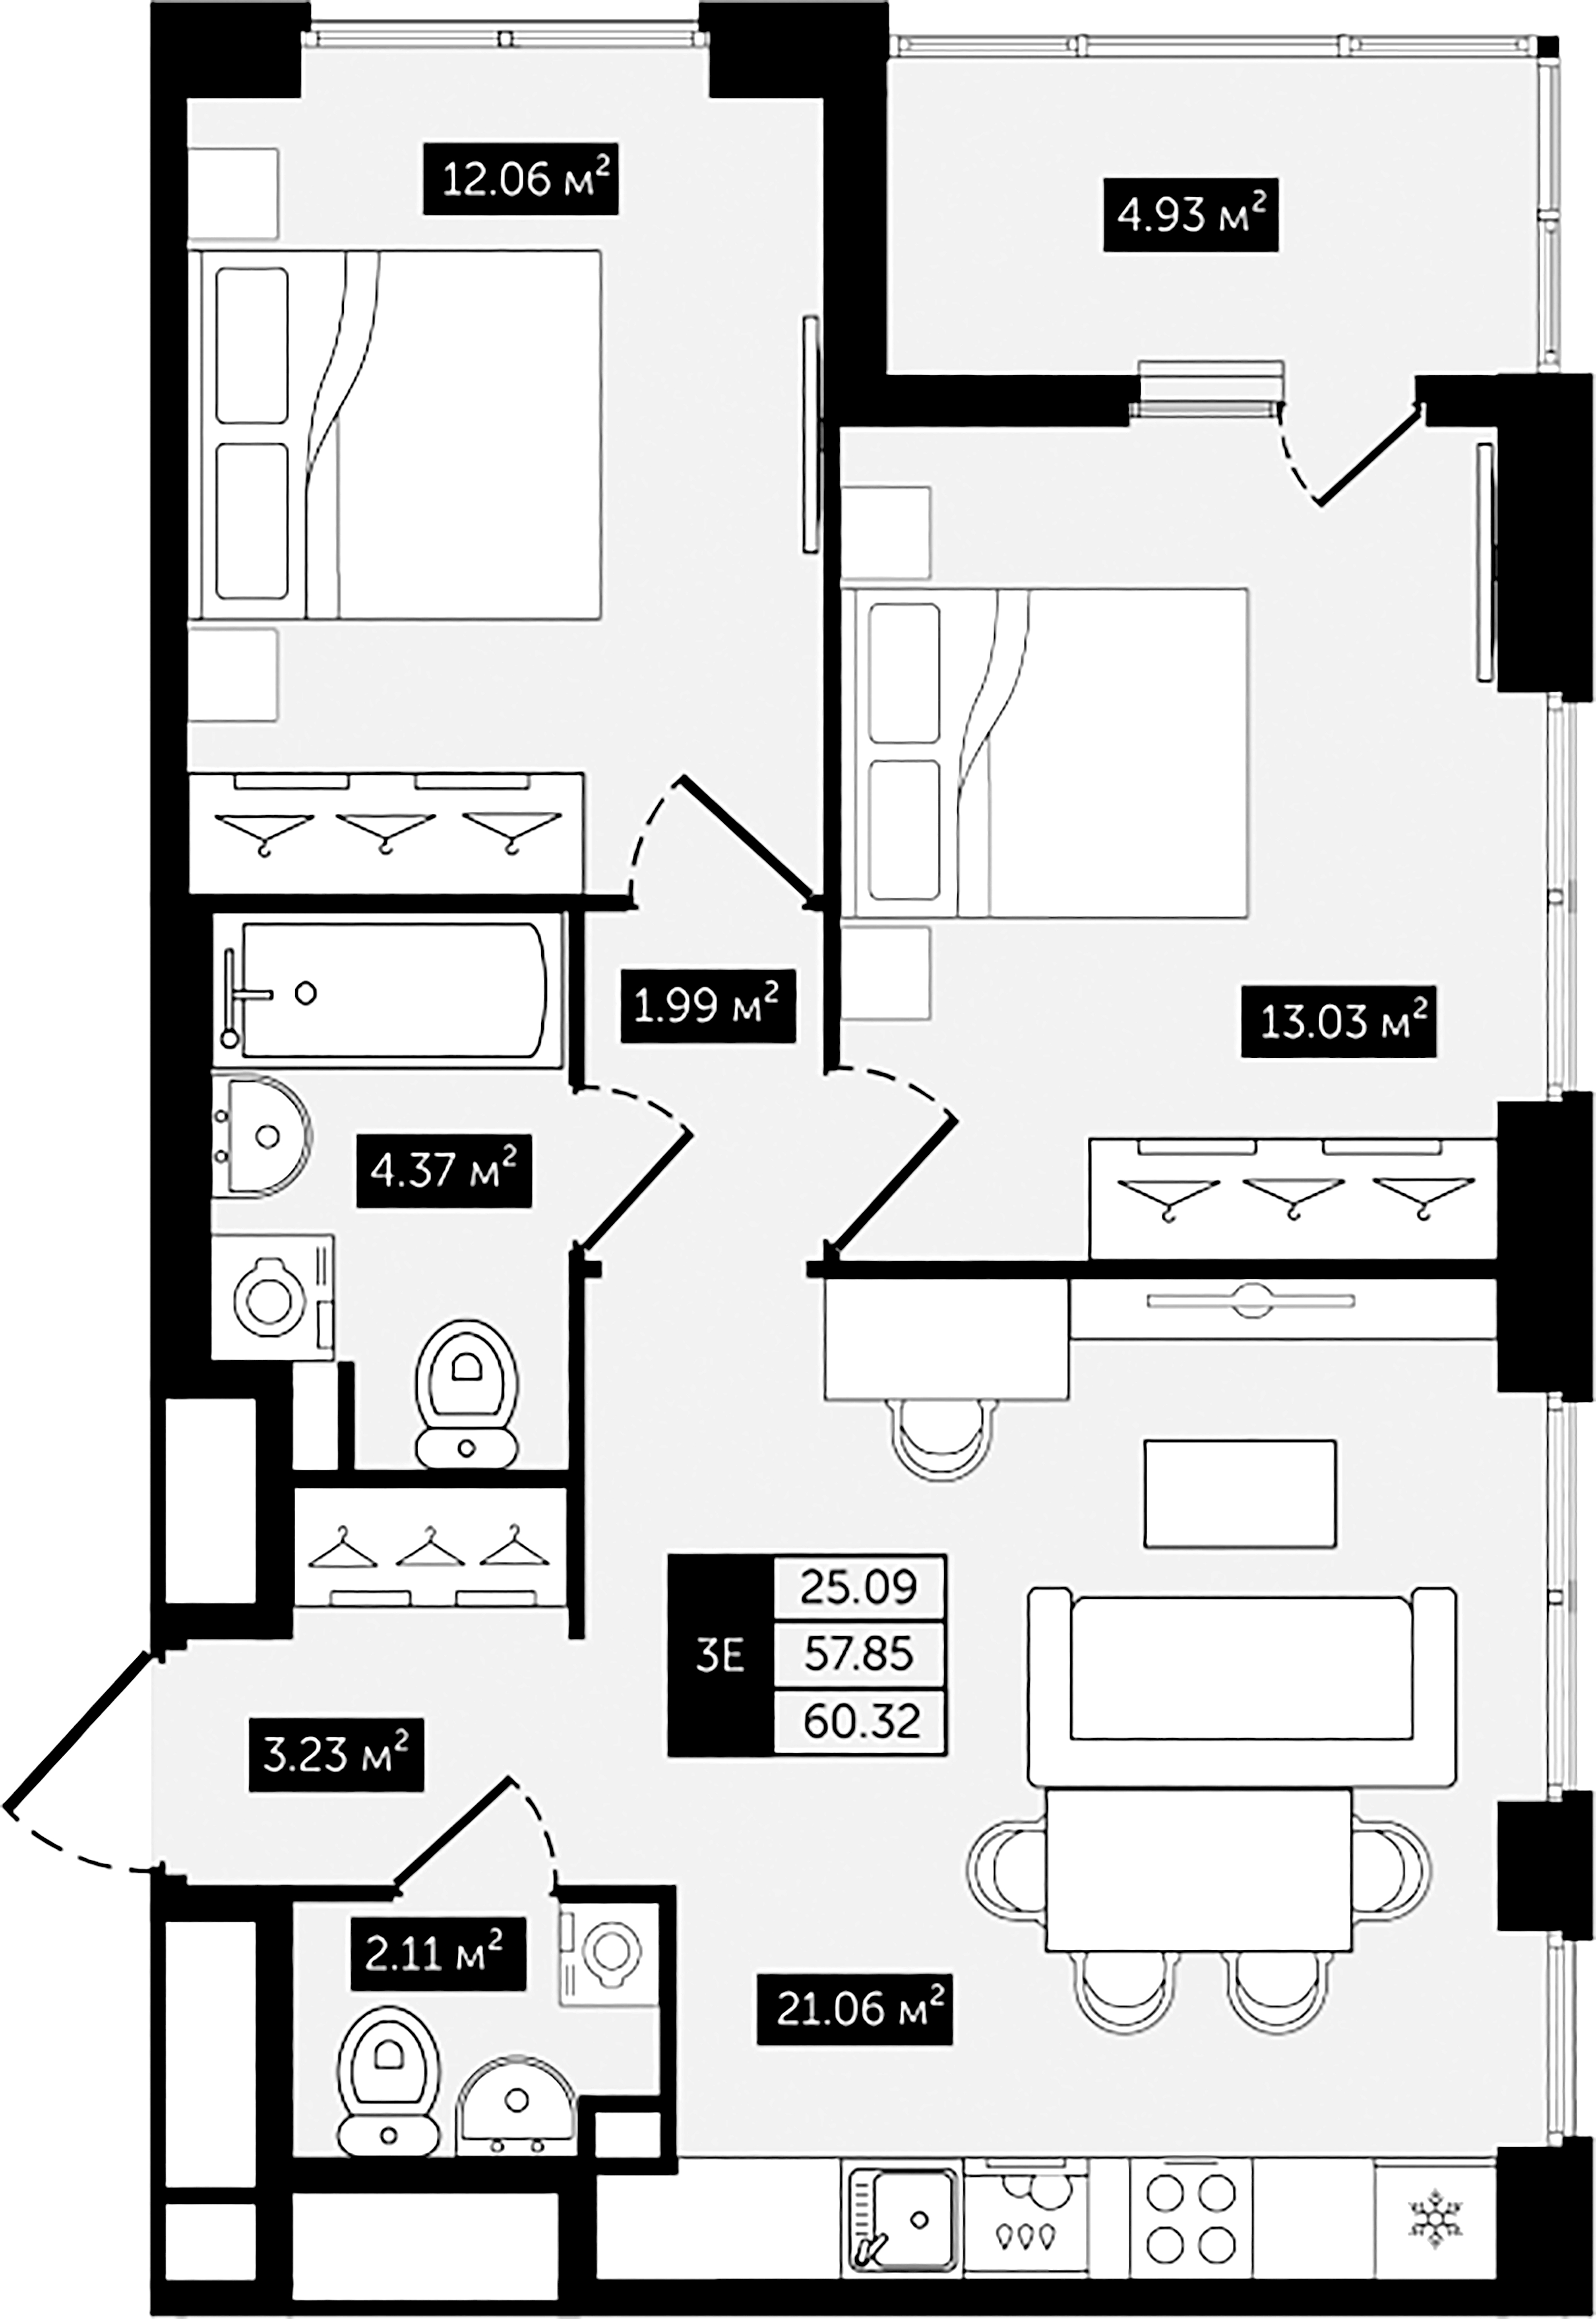 2-комнатная квартира  №6 в Клубный дом №8: 60.32 м², этаж 2 - купить в Санкт-Петербурге